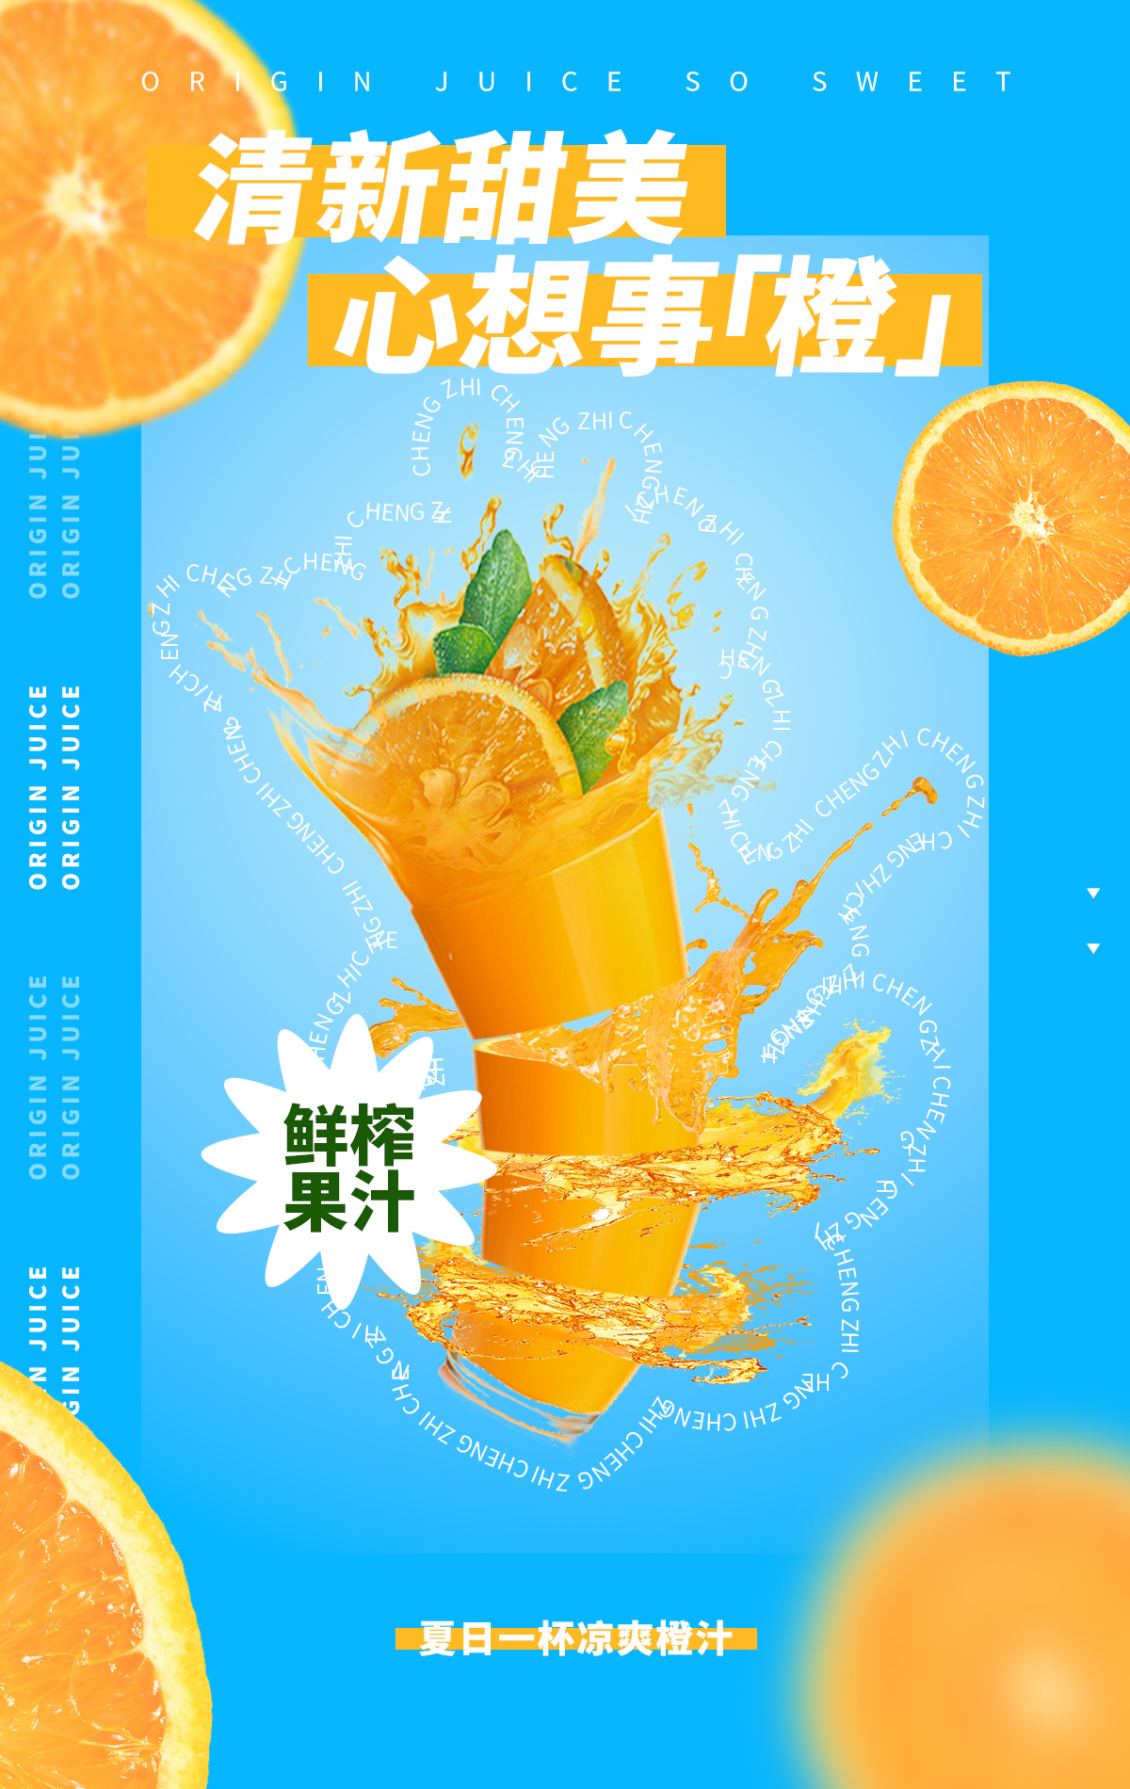 淘宝美工y275964鲜榨果汁海报作品